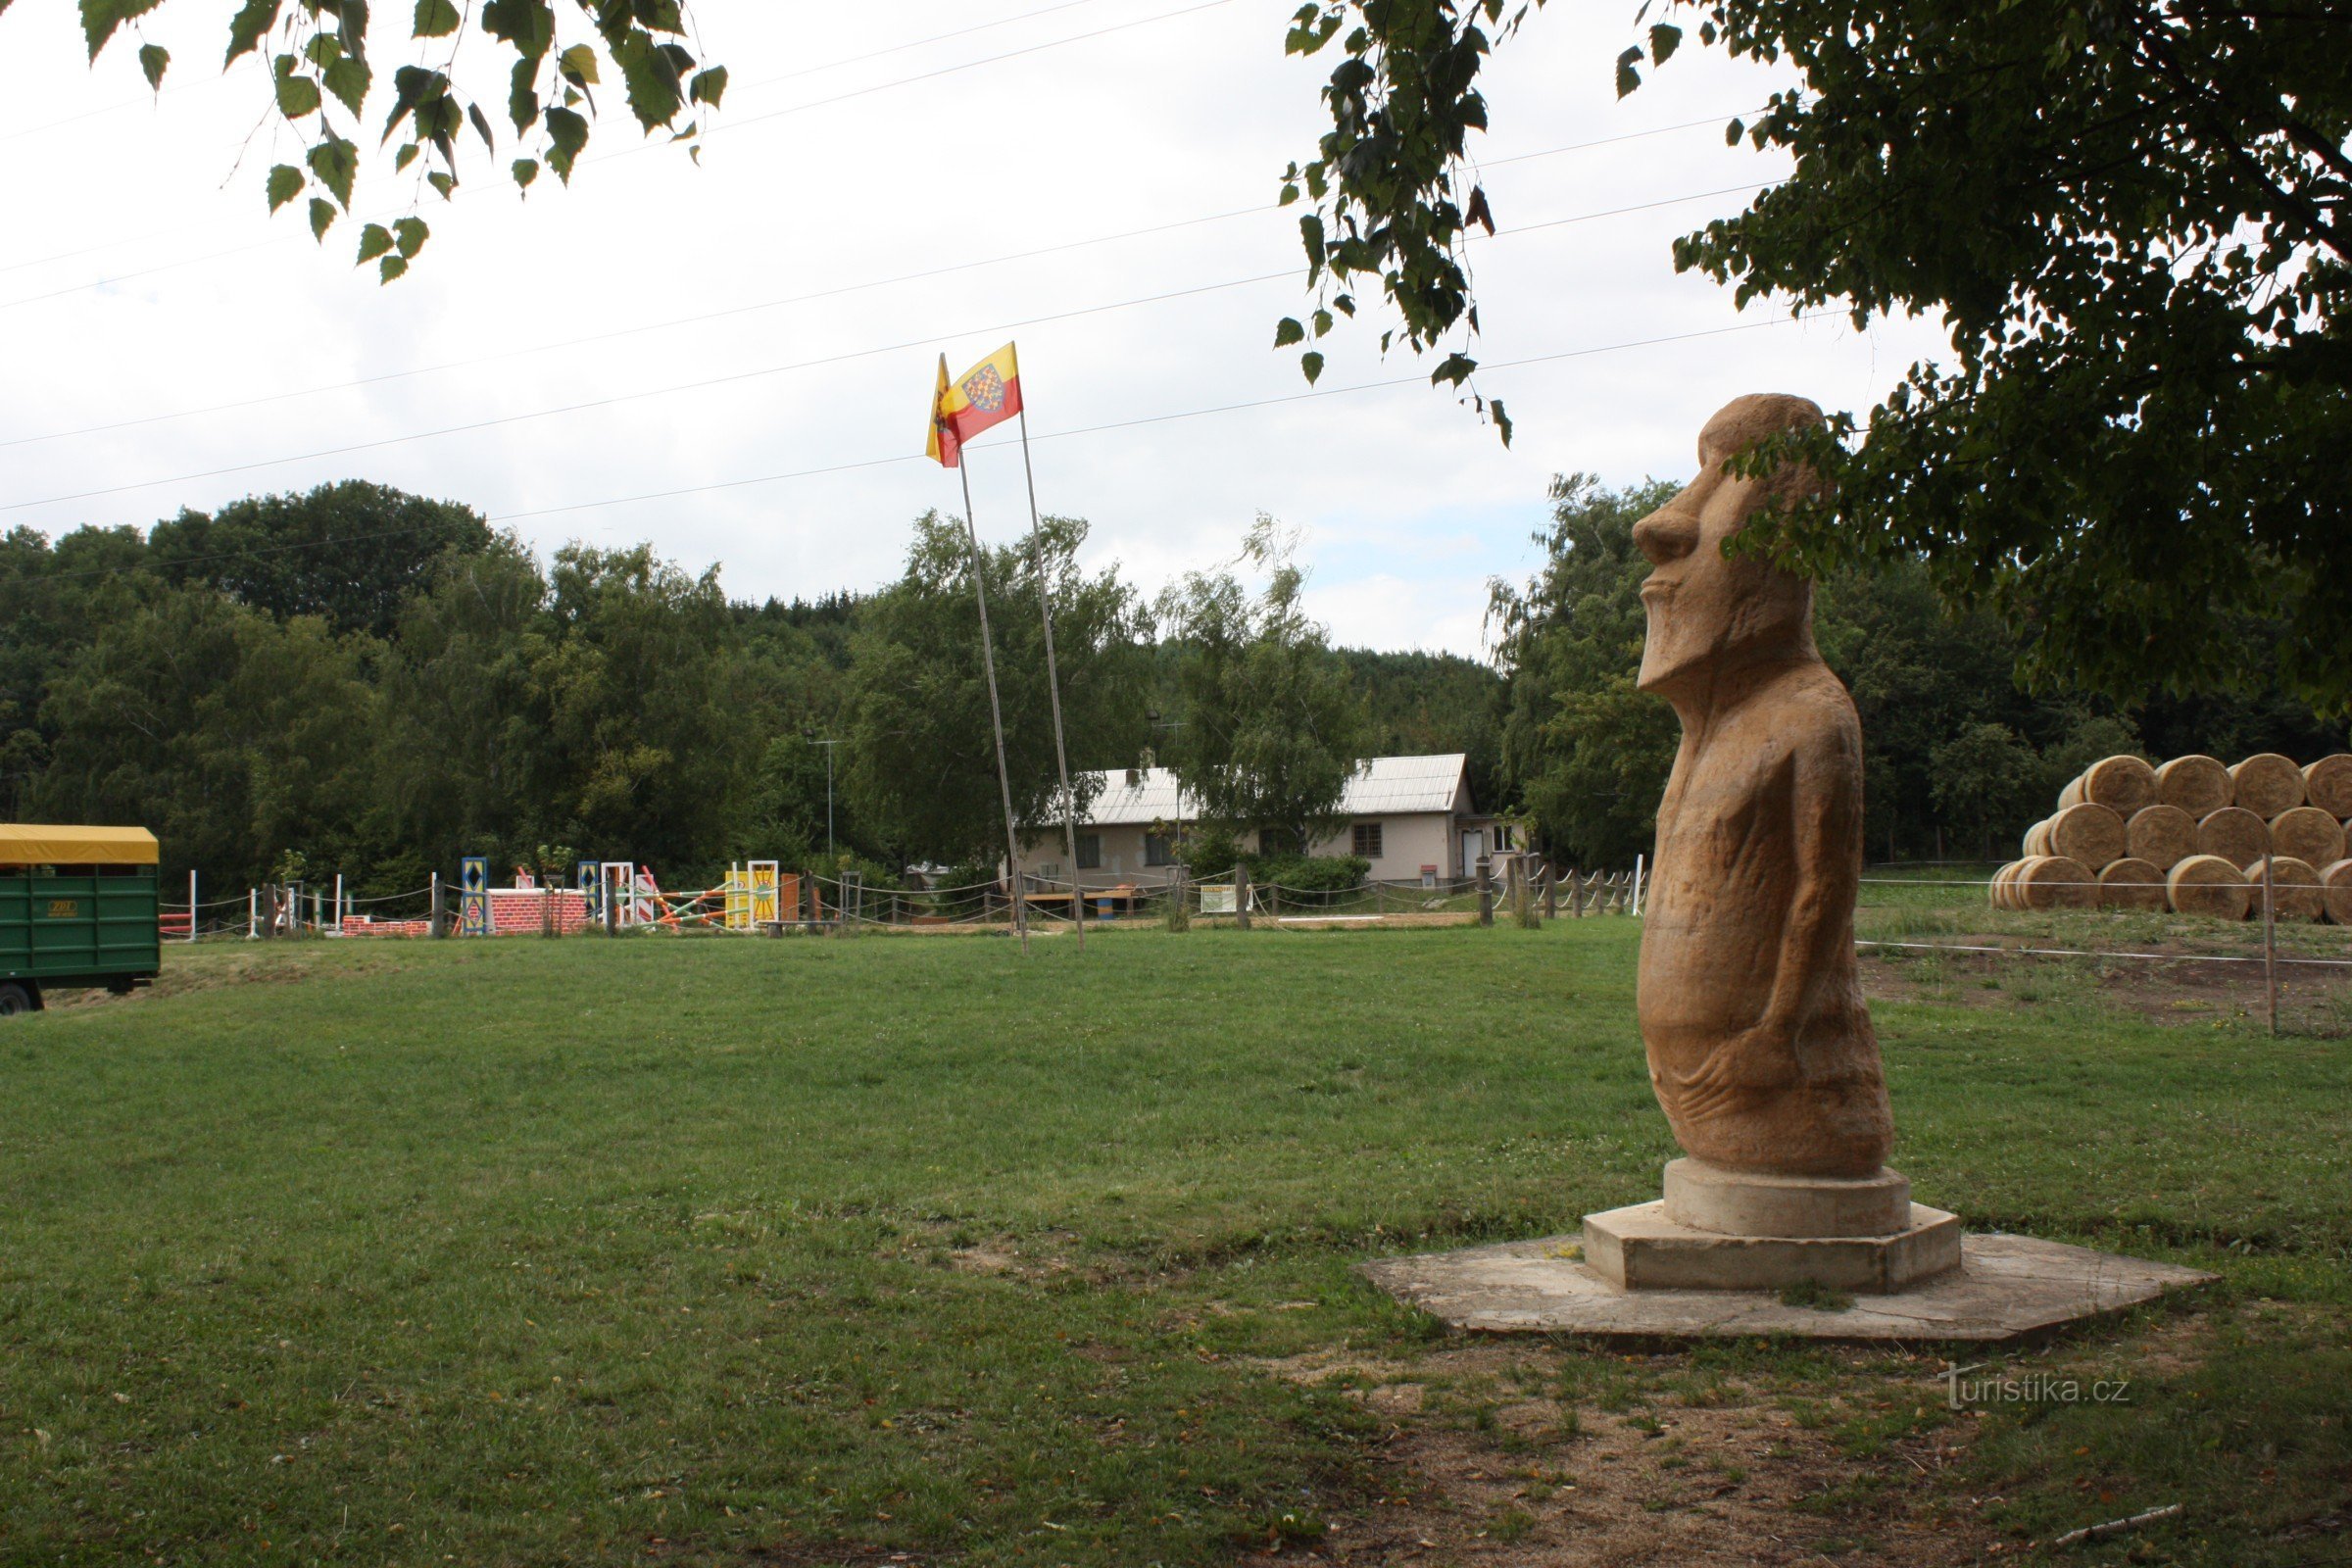 Replica of the Moai statue in Bohdalice near Bučovice